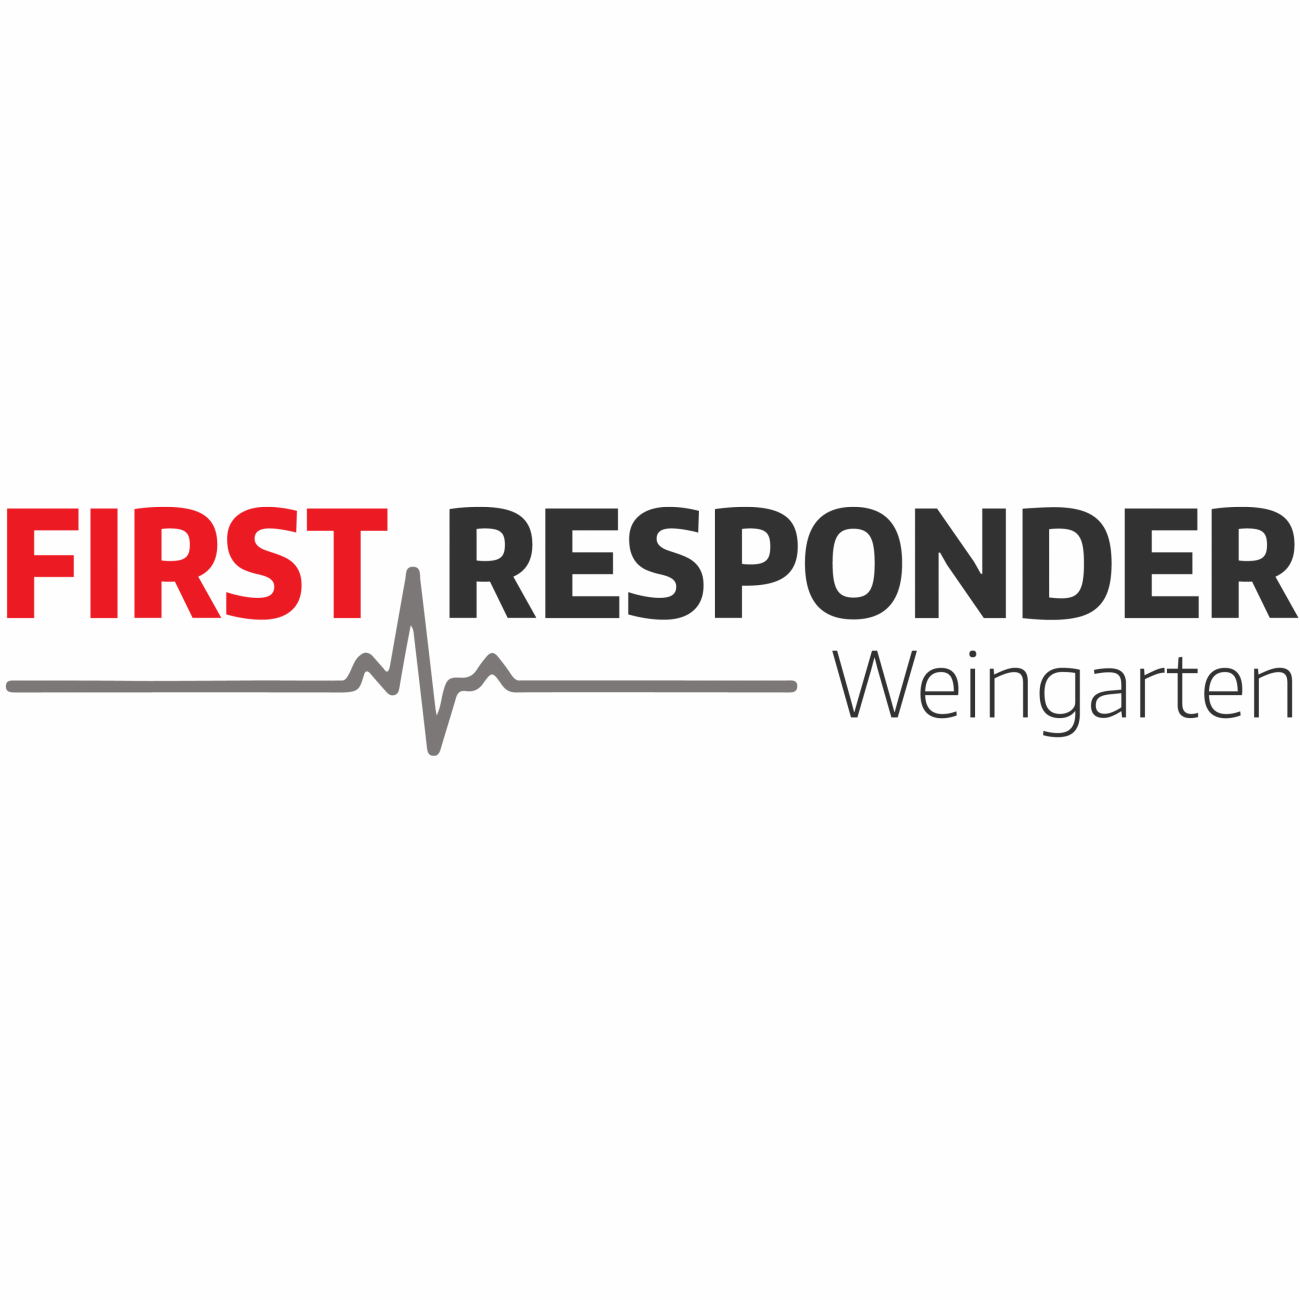 First Responder Weingarten, Einrichtungen